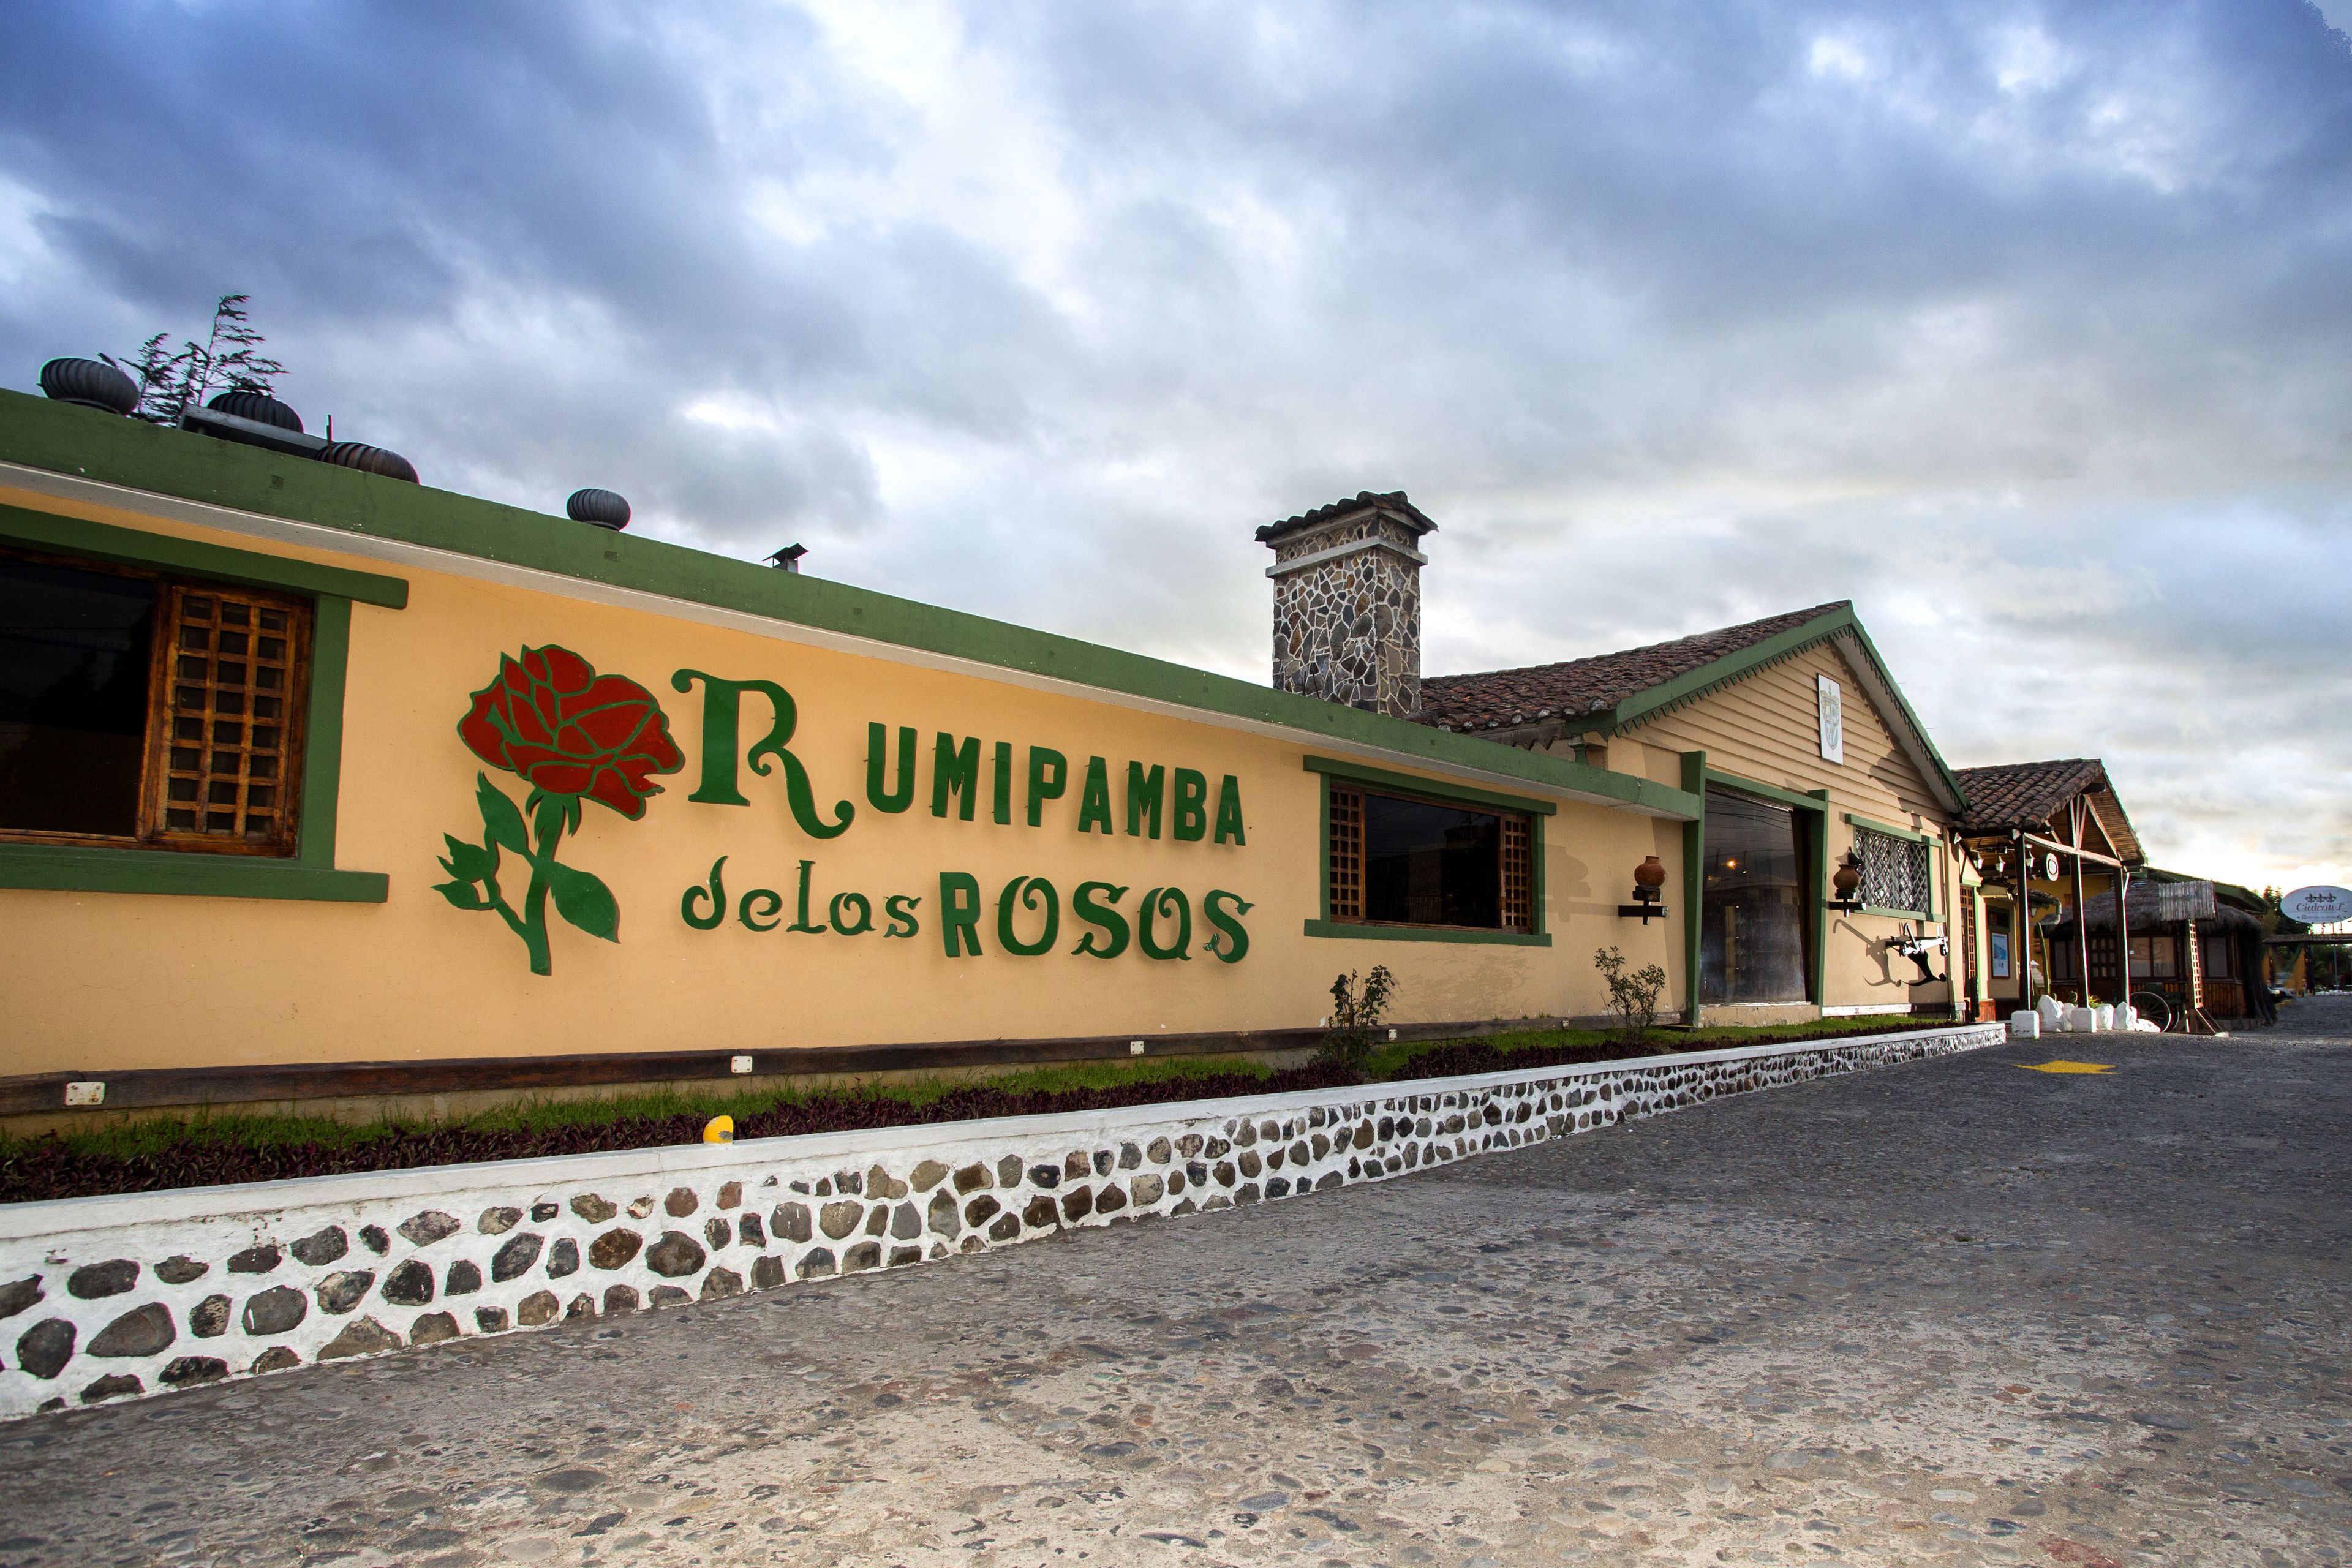 Hosteria Rumipamba de Las Rosas